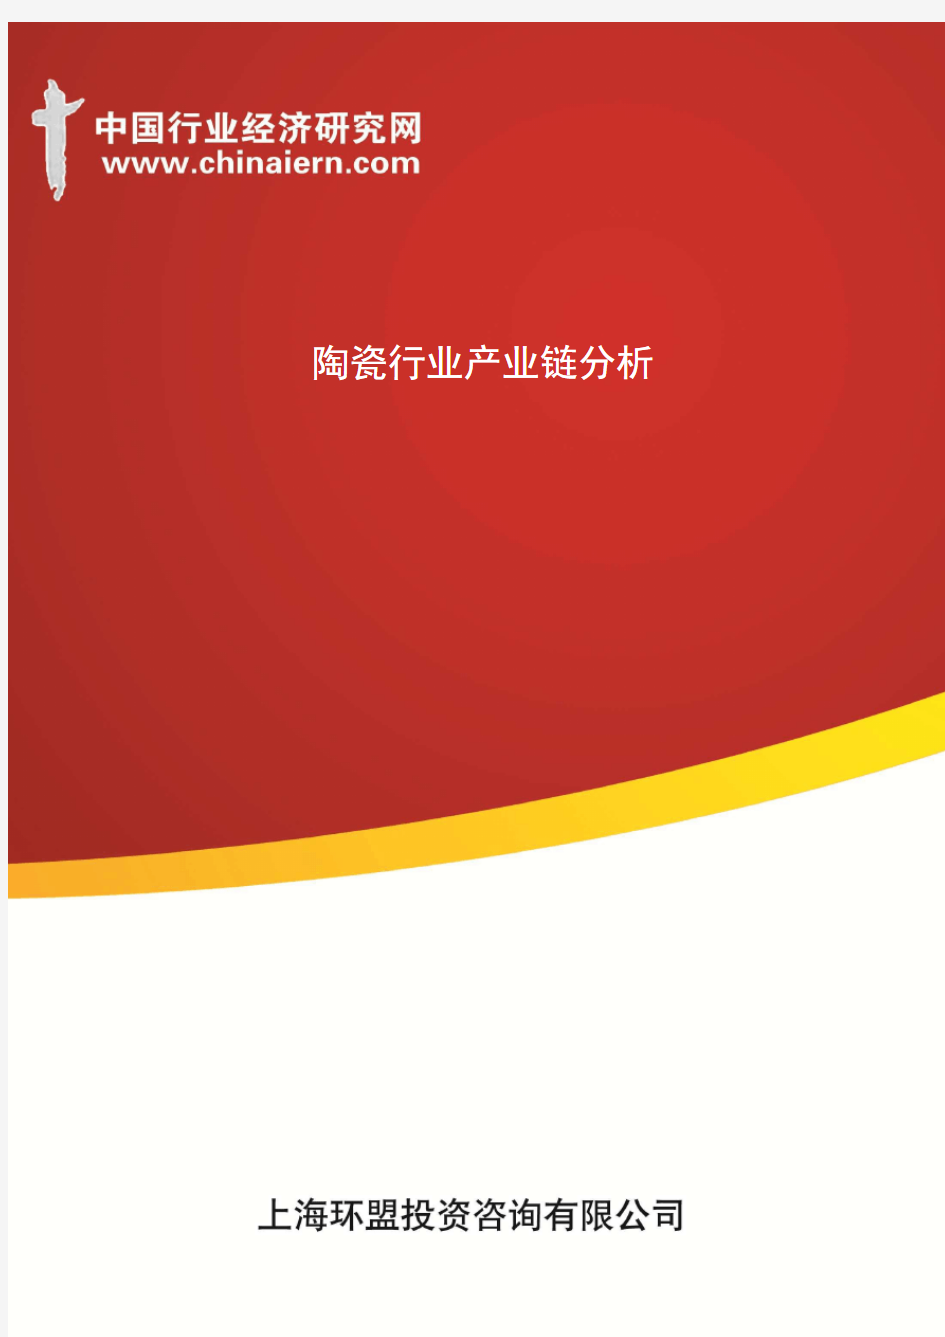 陶瓷行业产业链分析(上海环盟)